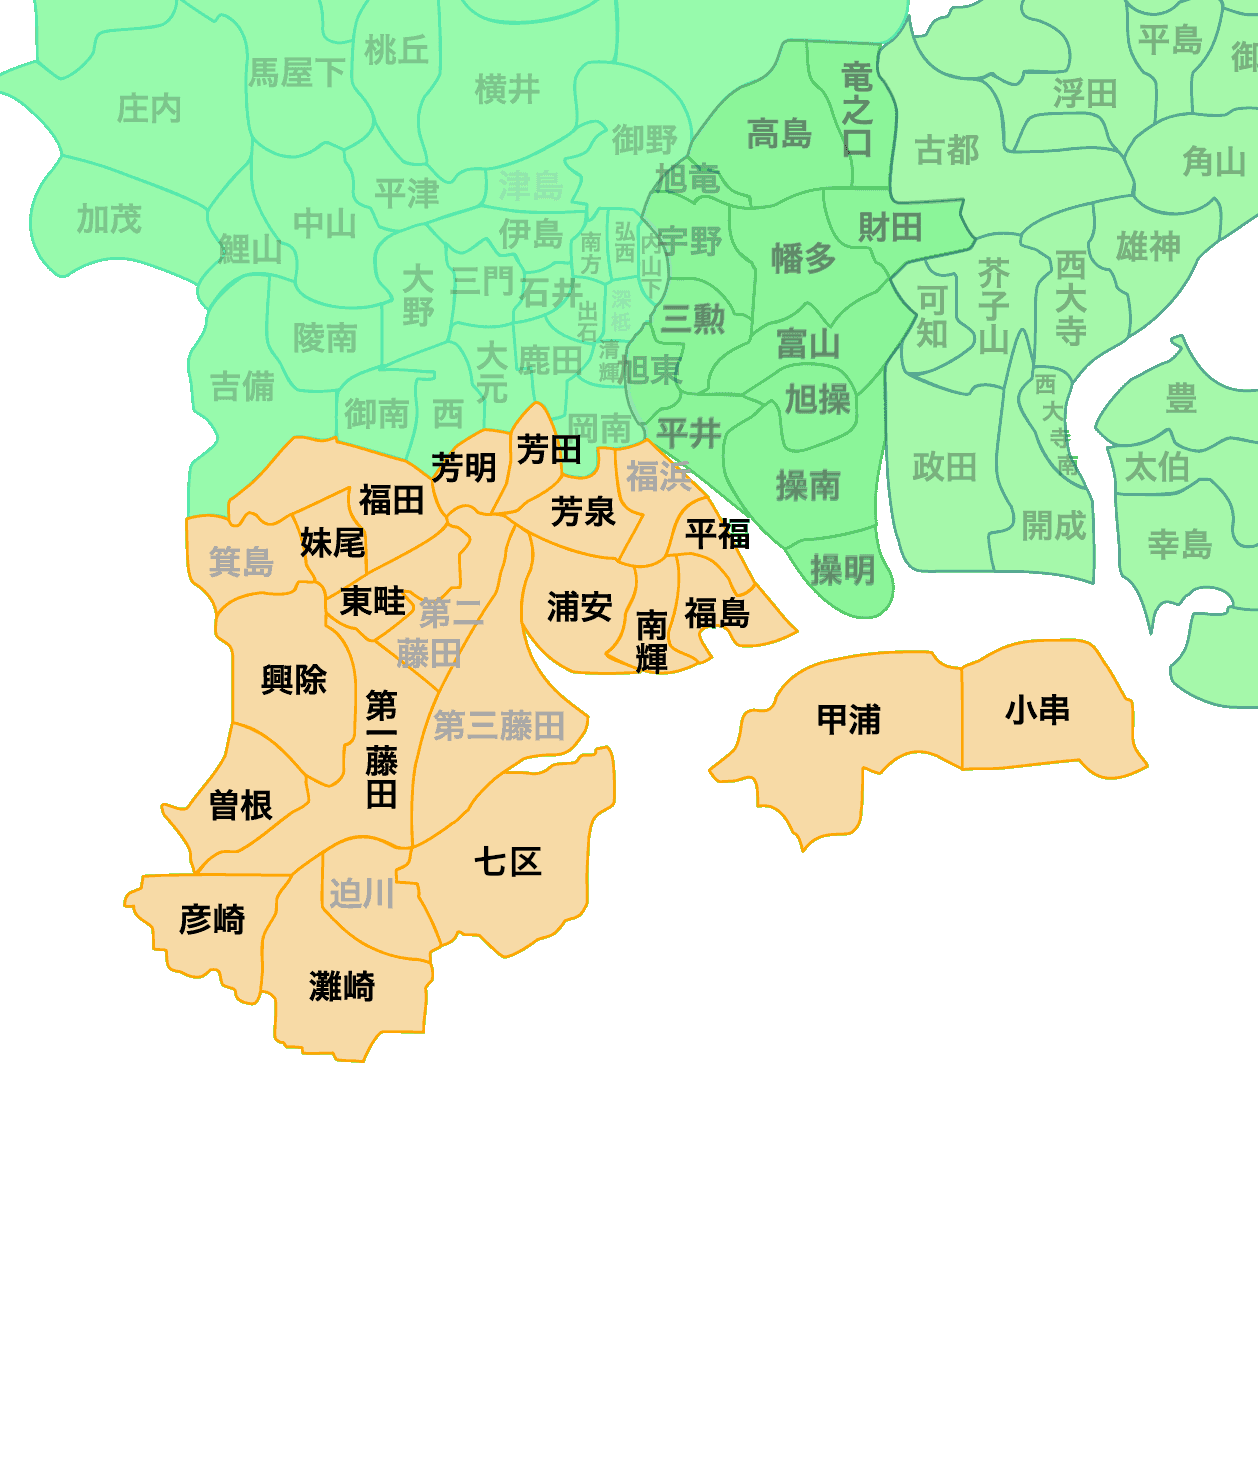 岡山市南区 町内会マップ